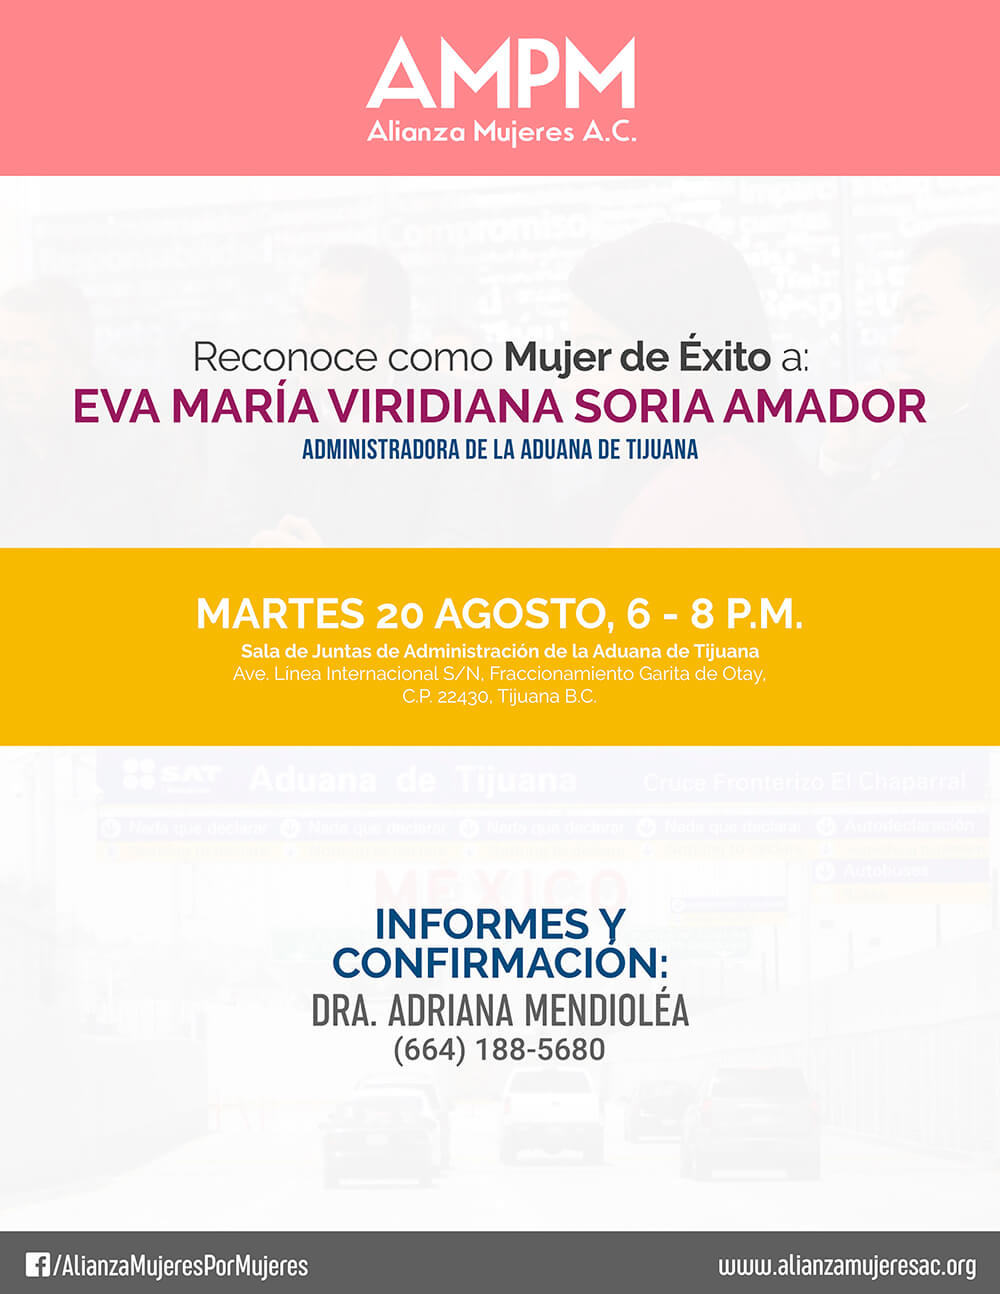 Mujeres de éxito – Maestra Eva María Viridiana Soria Amador, Administradora de la Aduana en Tijuana